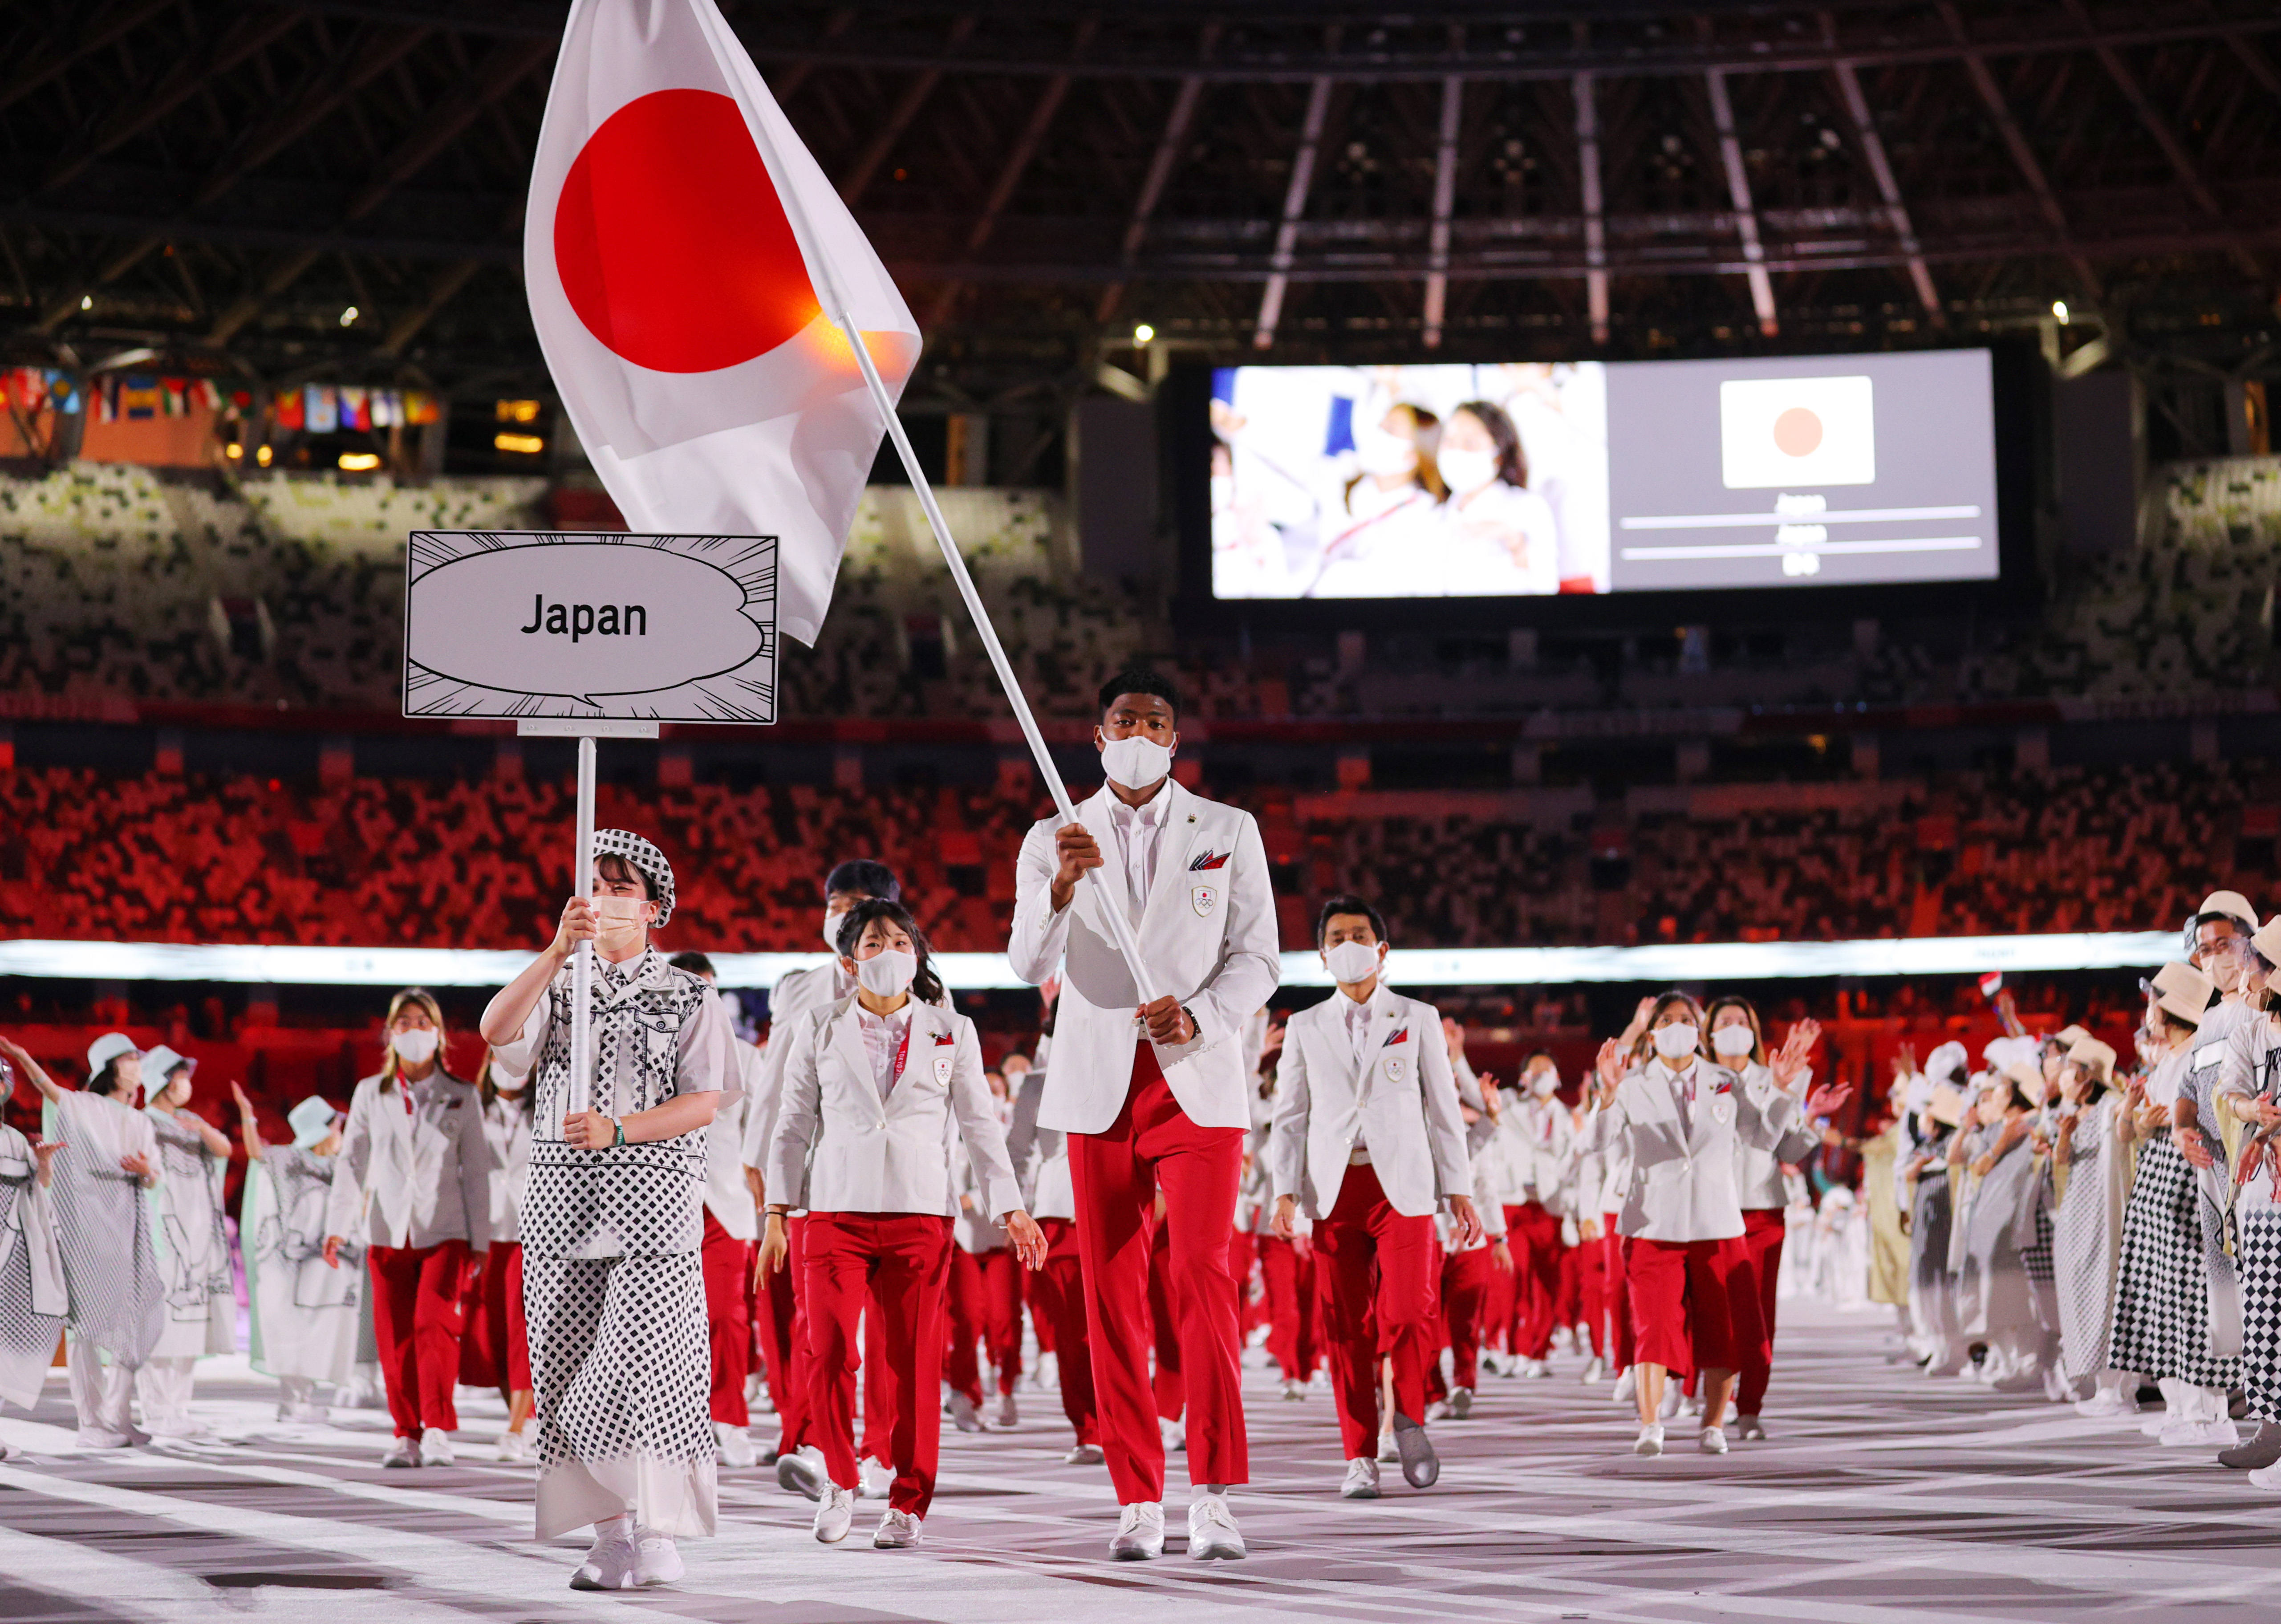 日本奥运代表团服装图片